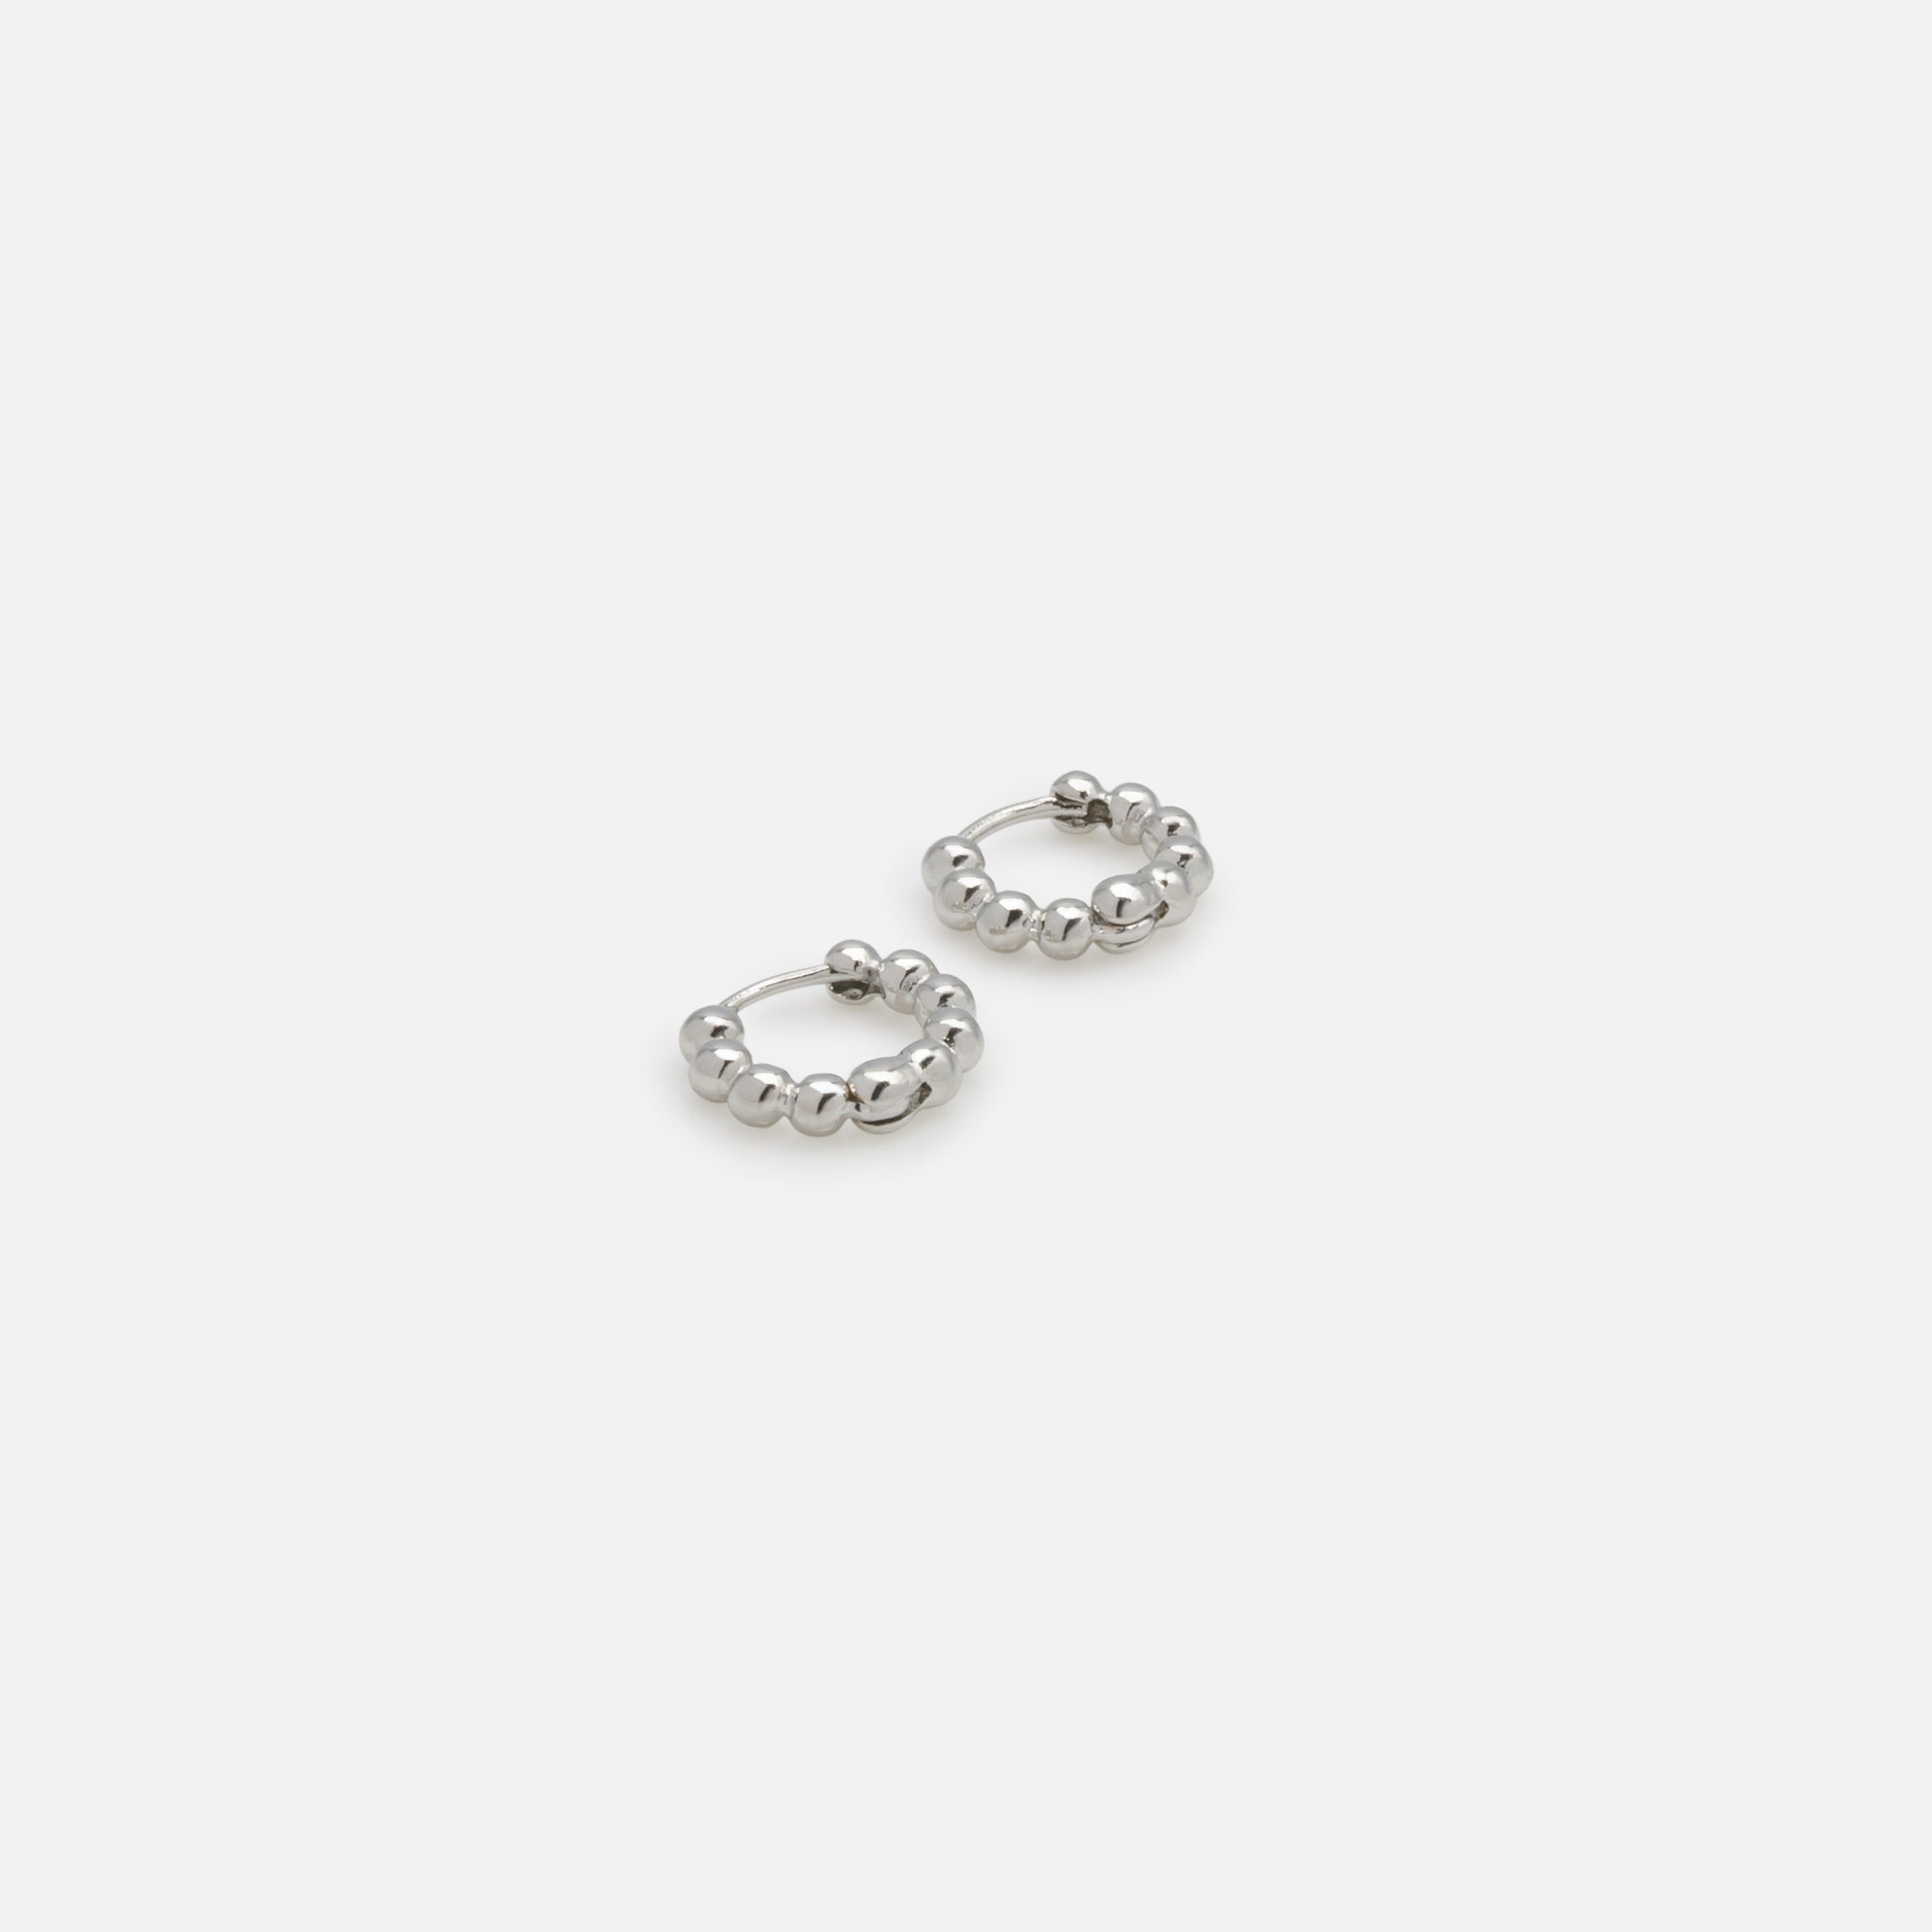 Trio of silver bead effect earrings